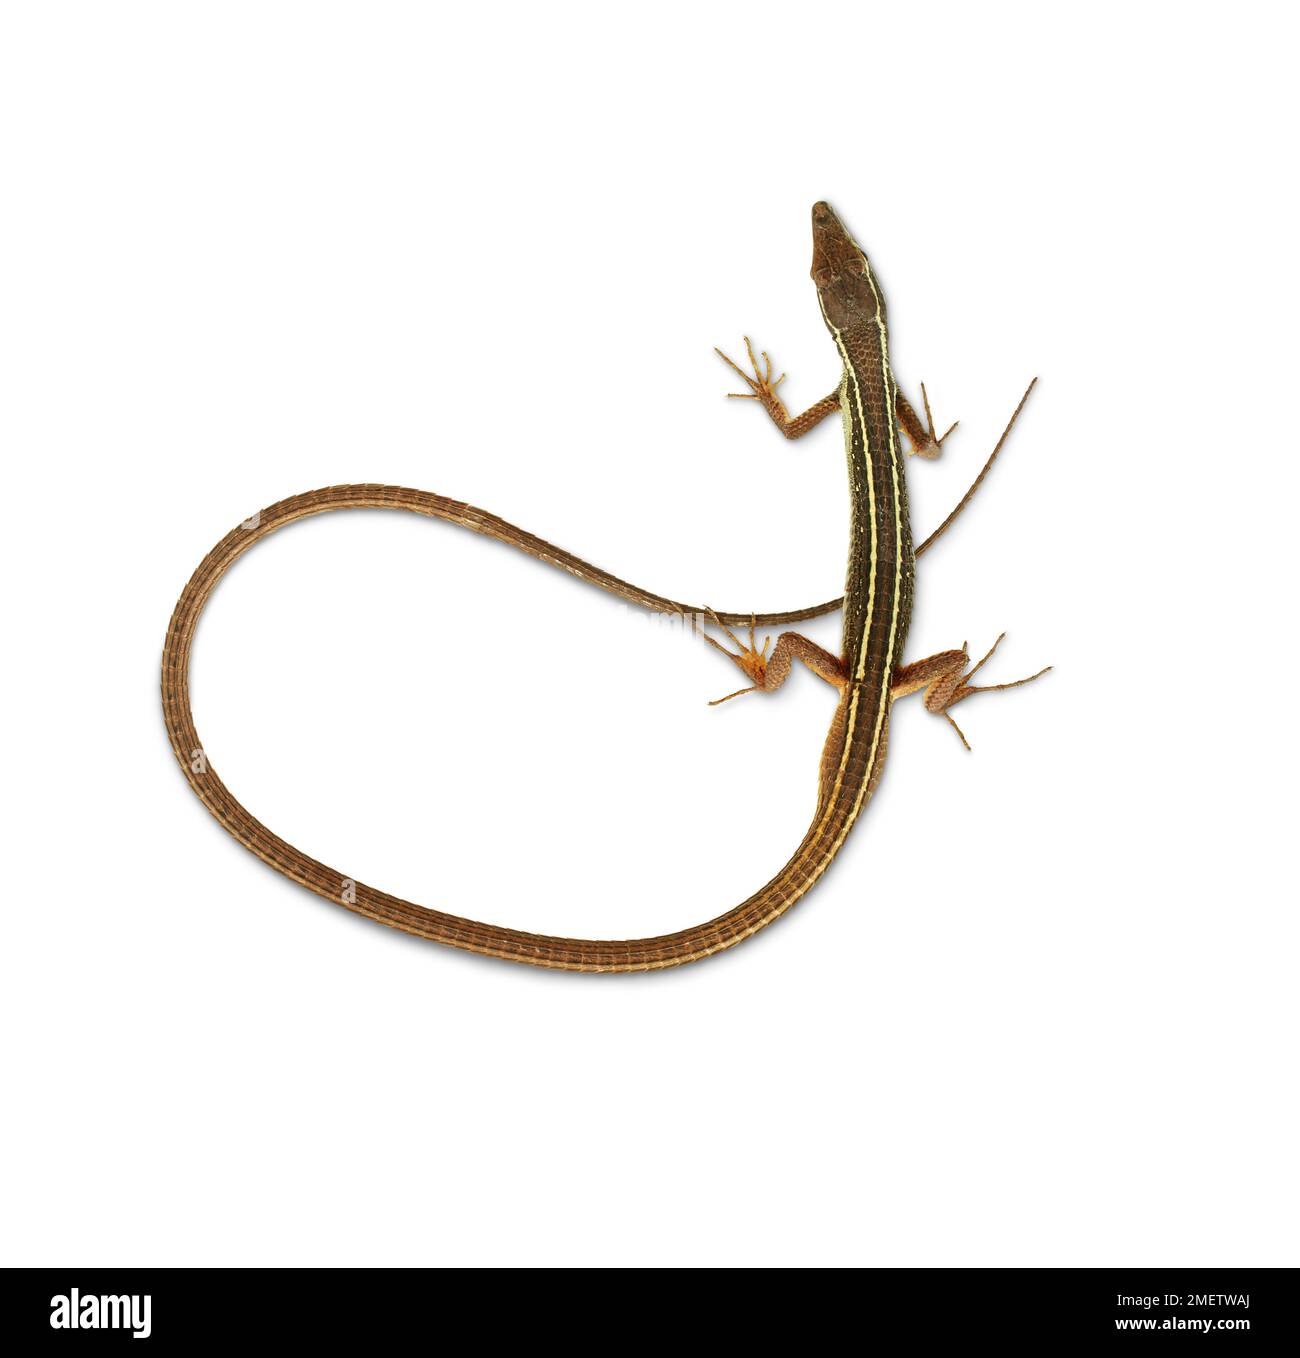 Long-tailed Grass Lizard (Takydromus sexlineatus) Stock Photo